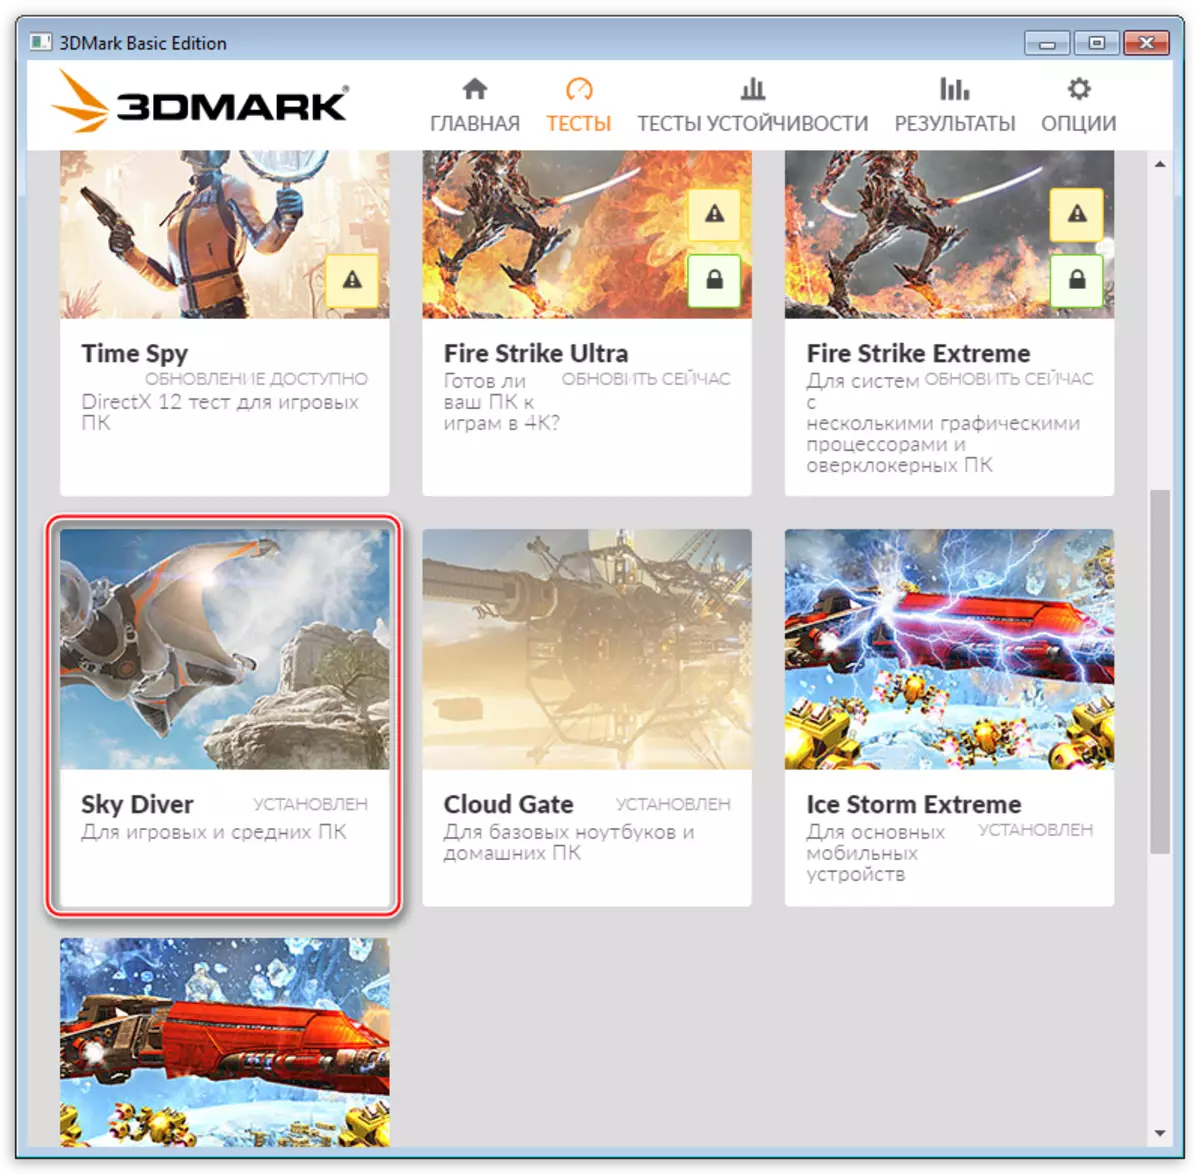 Επιλογή δοκιμής Sky Diver στο πρόγραμμα δοκιμής συστήματος 3DMark από προγραμματιστές FutureMark